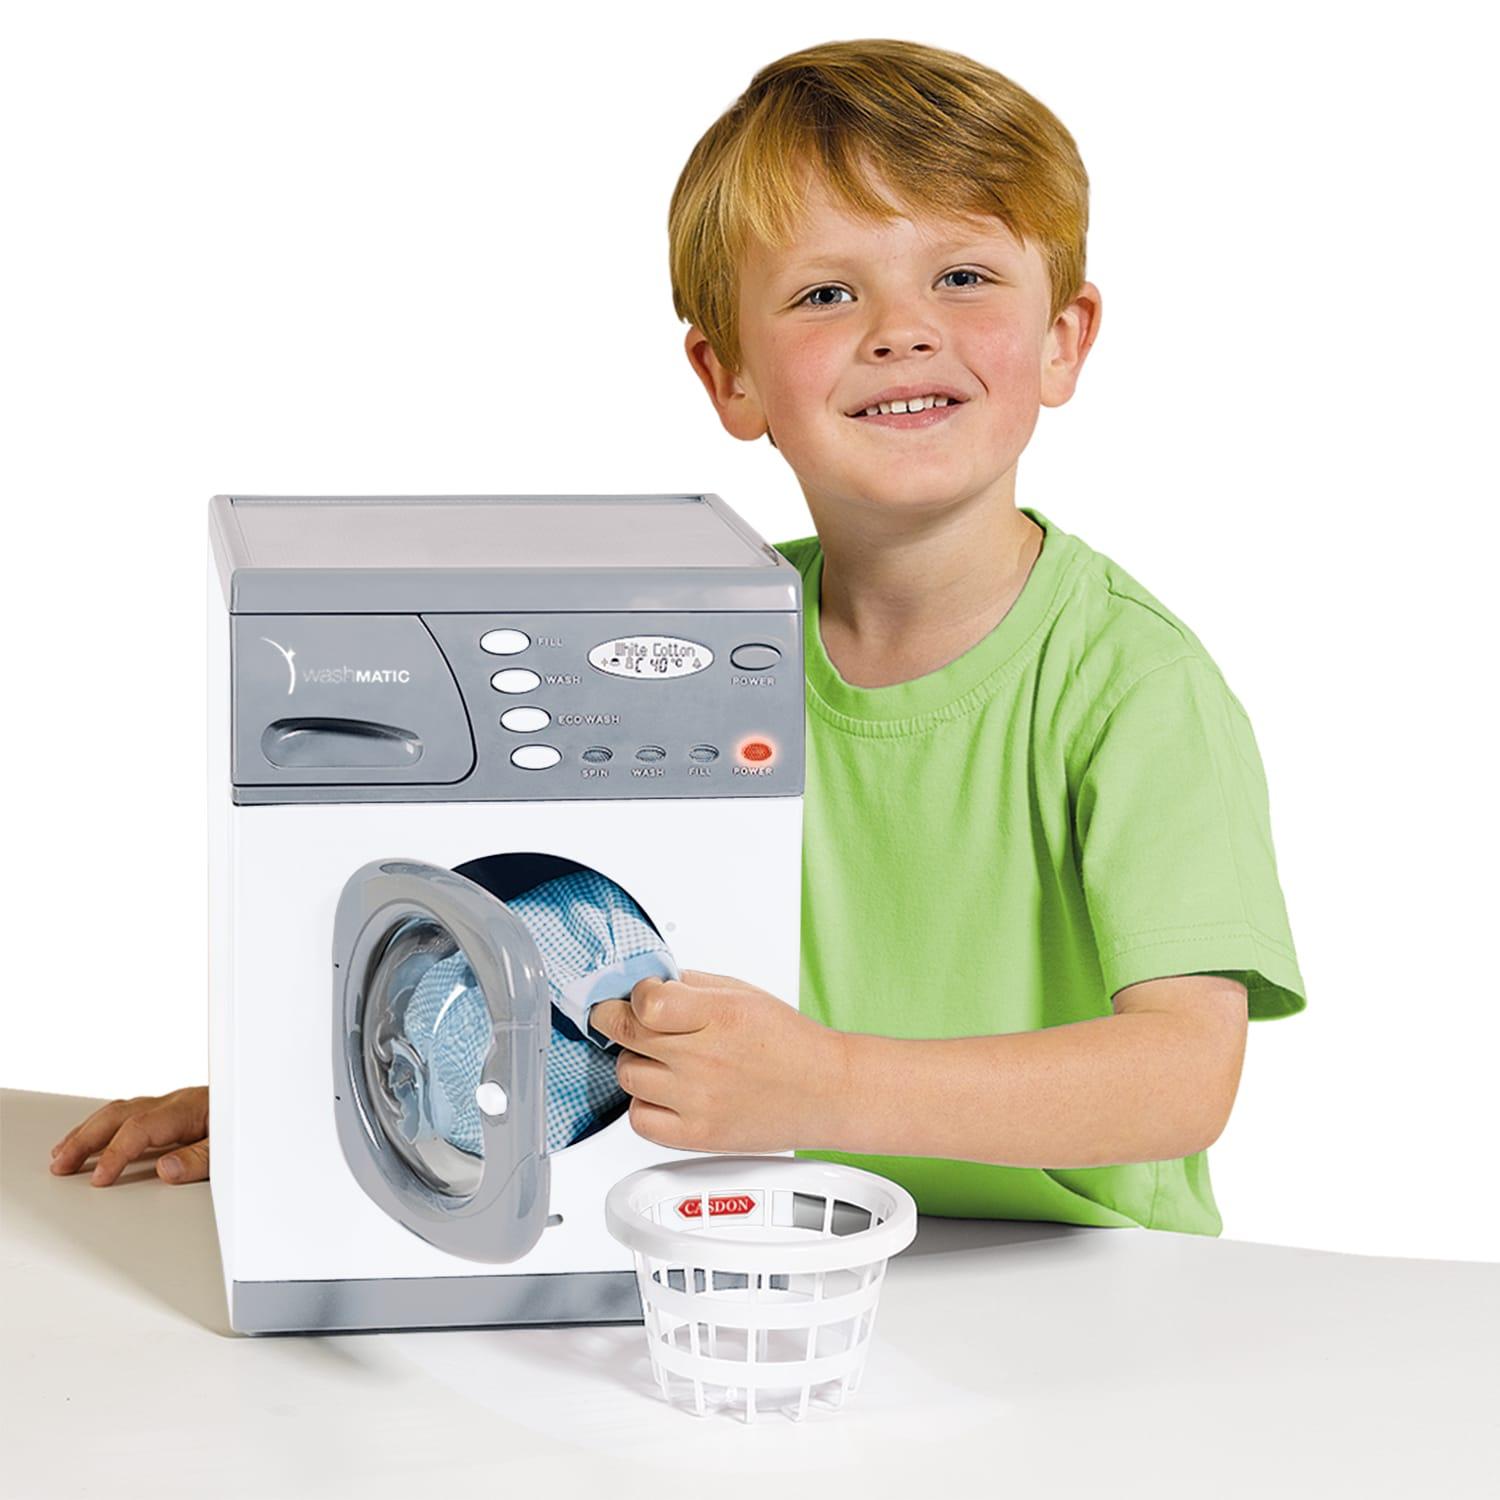 toy washing machine that spins